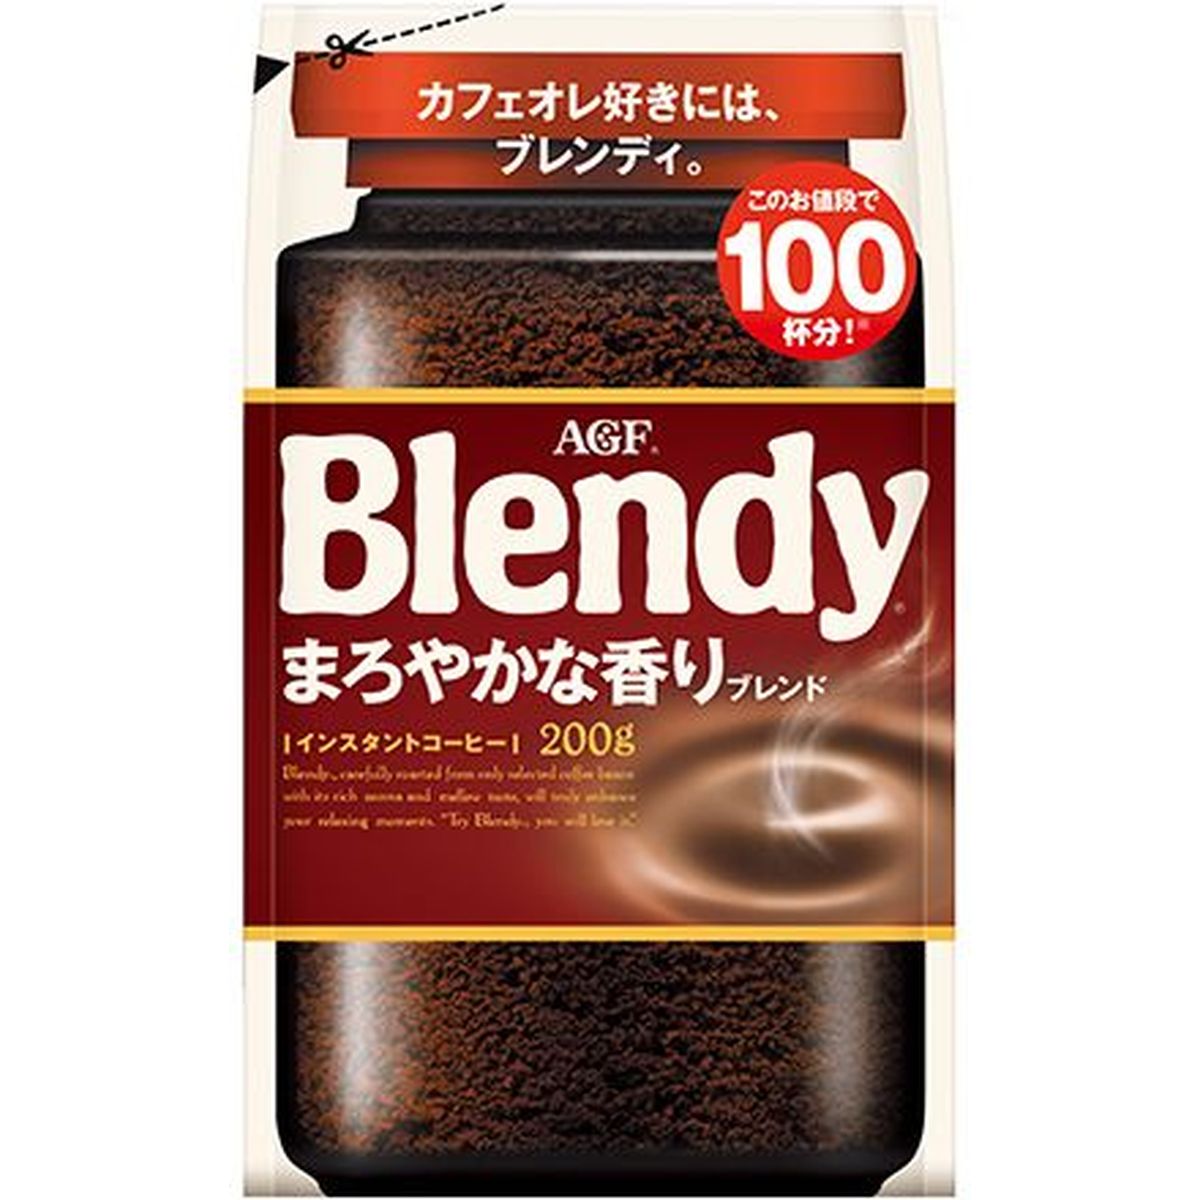 【12個入リ】AGF ブレンディ マロヤカナ香リブレンド 袋 200g